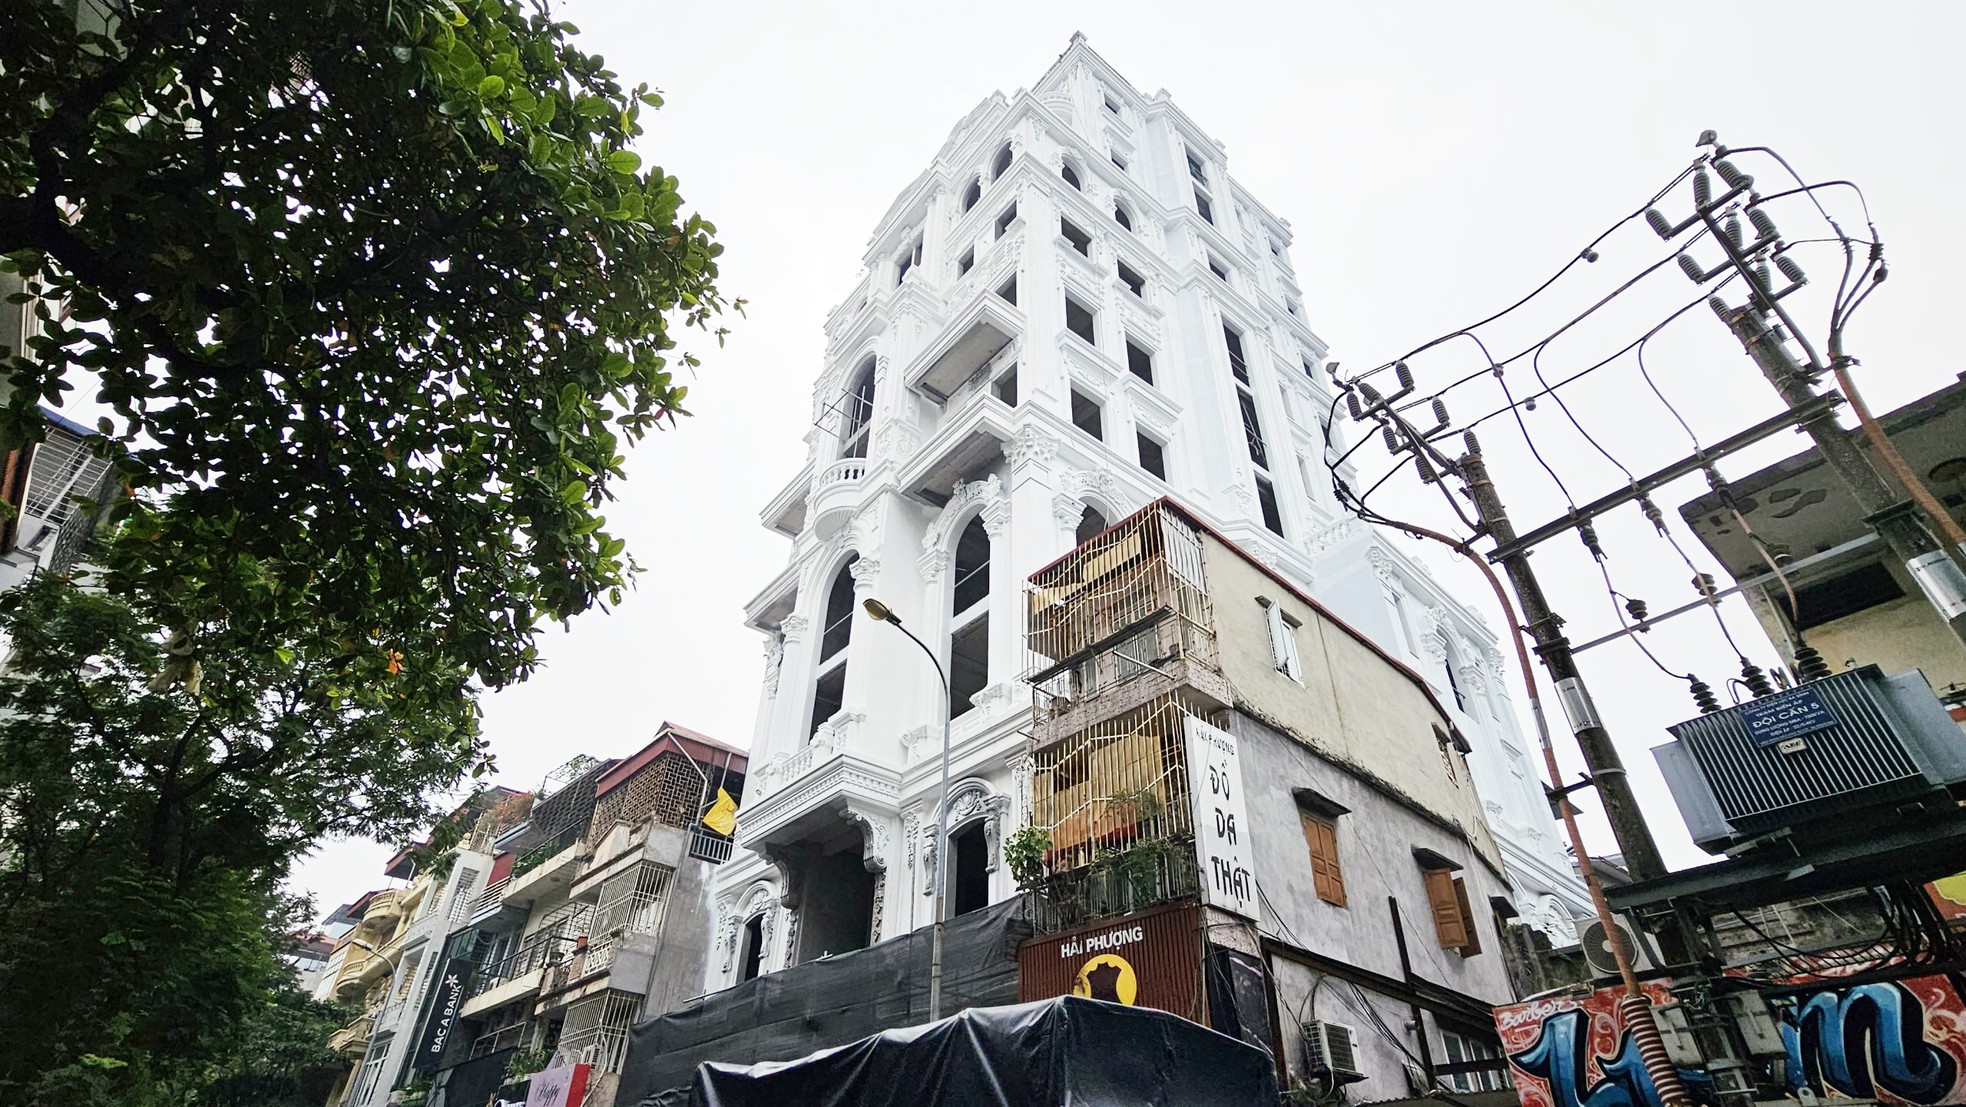 Cao ốc 10 tầng phố cổ không tìm thấy hồ sơ cấp phép khi bị Hà Nội yêu cầu làm rõ - Ảnh 14.